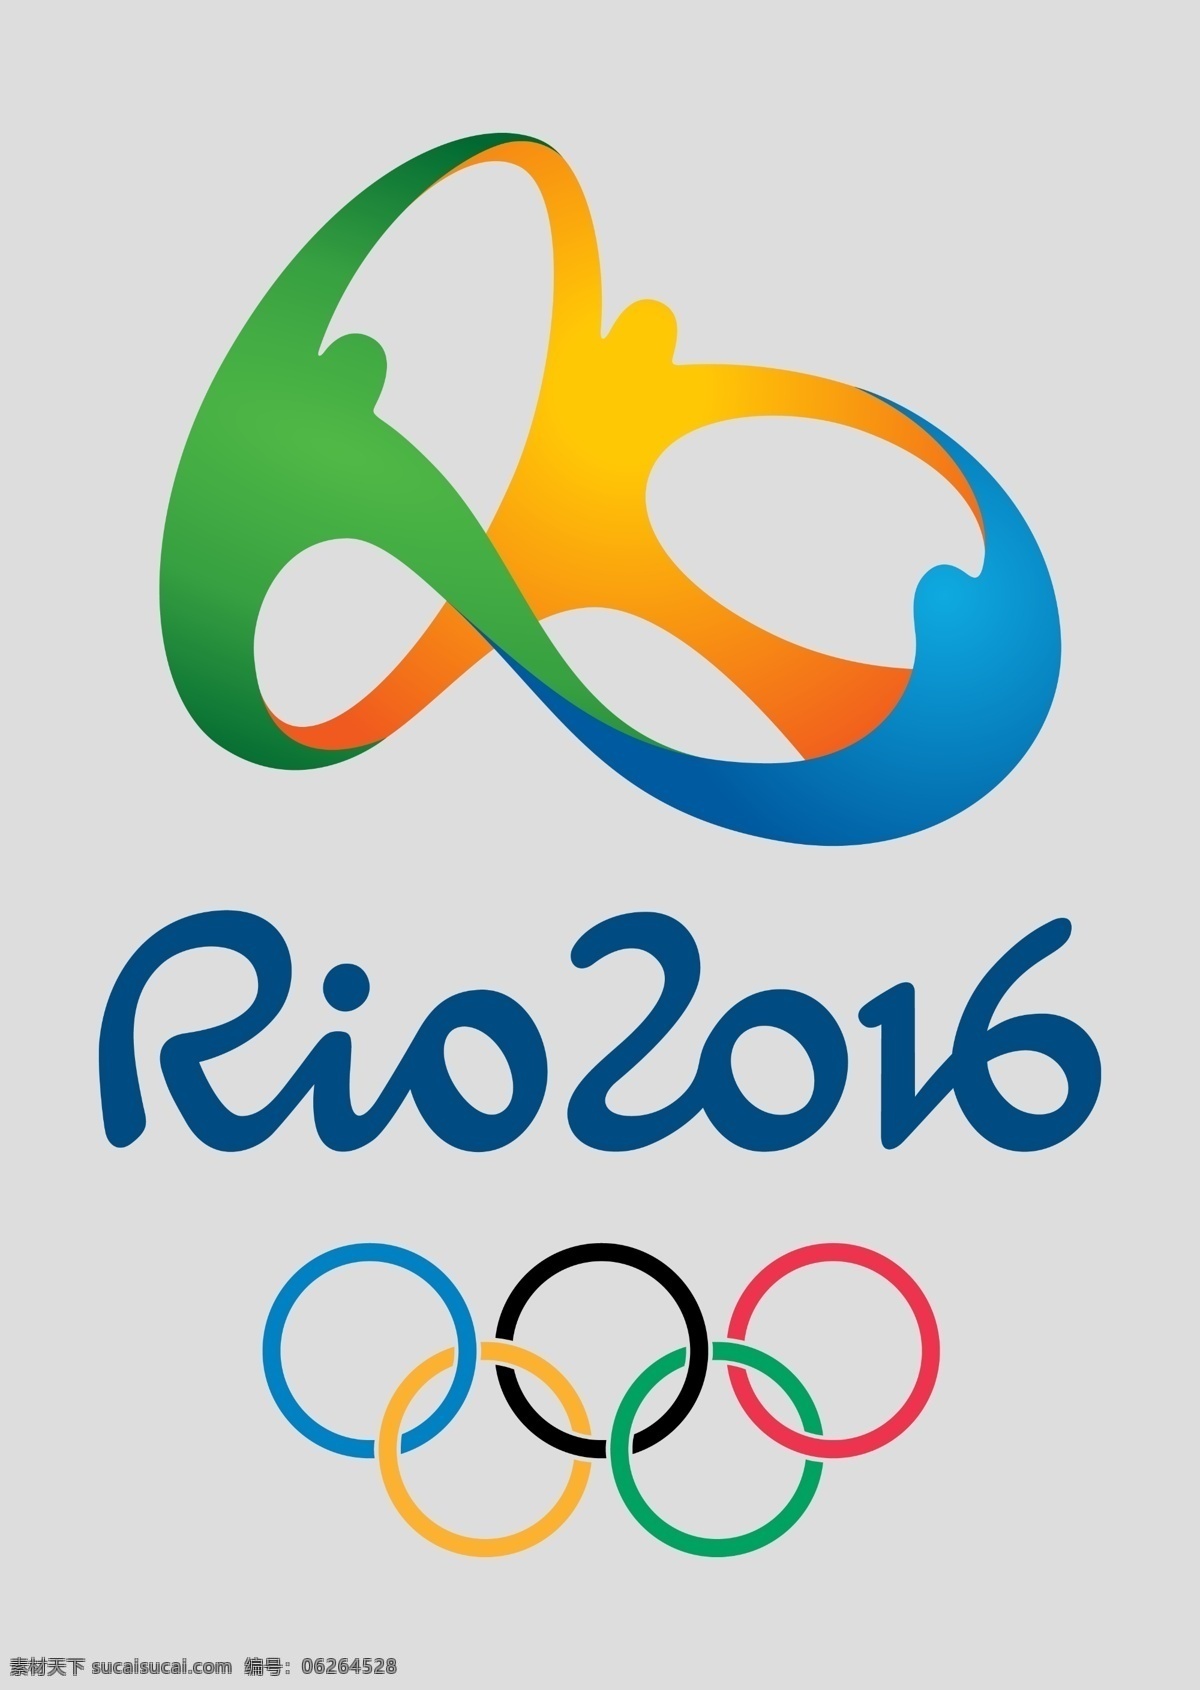 奥运会 奥林匹克 巴西奥运会 奥运会标 奥运 2016 年 奥运标 巴西奥运标 文化艺术 体育运动